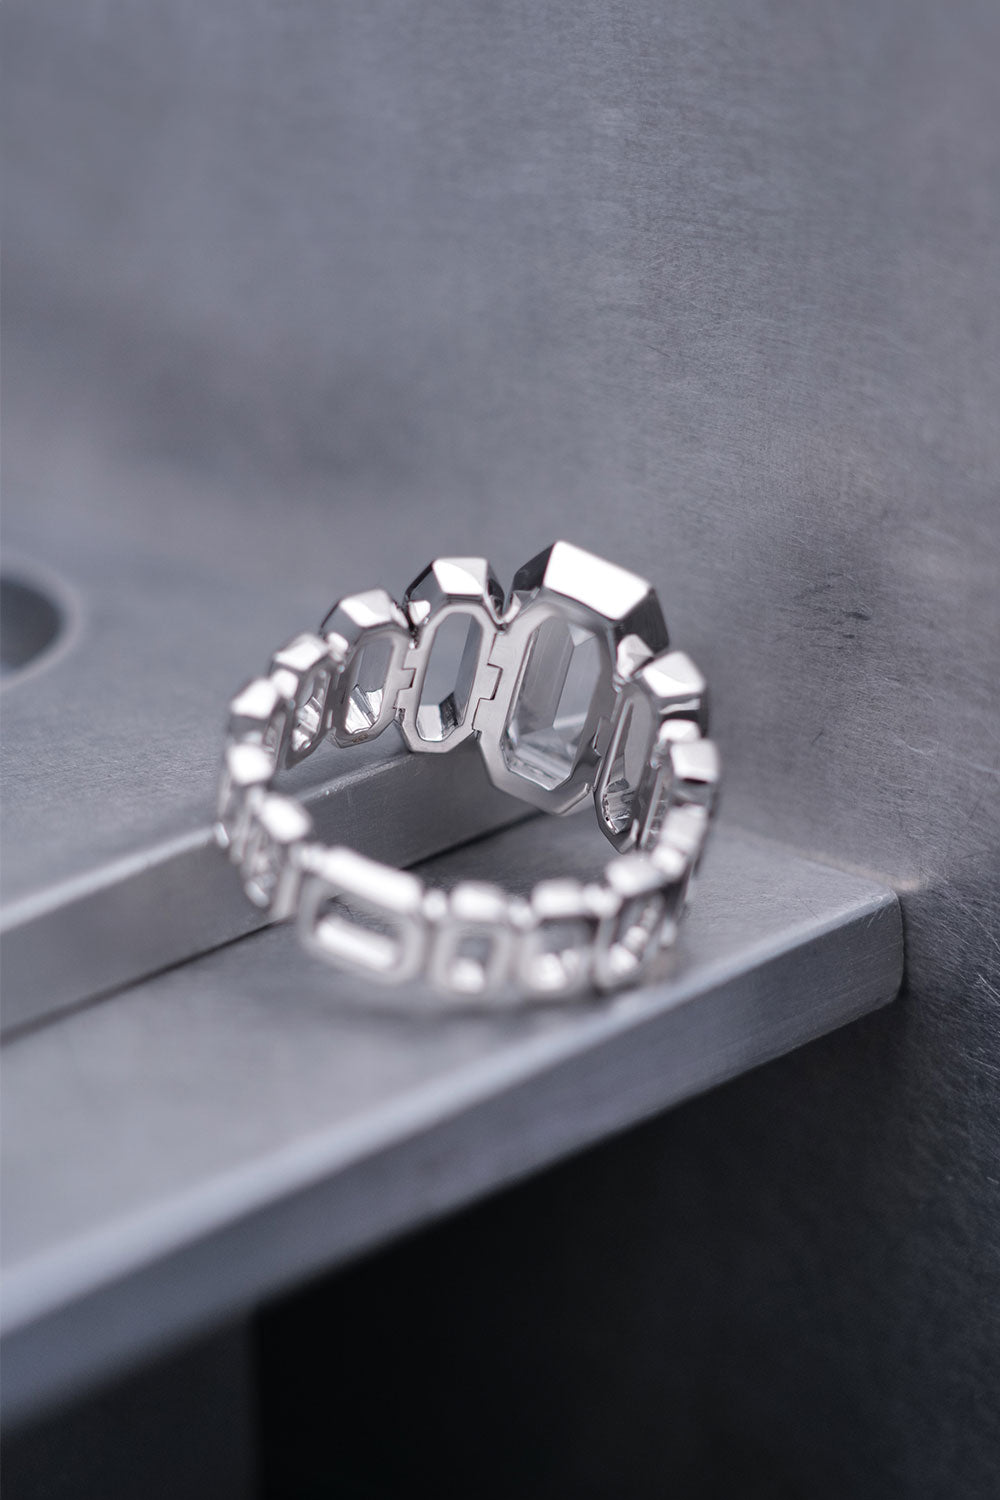 1.04ct Cut-Cornered Rectangular Mixed Cut Natural Diamond Ring